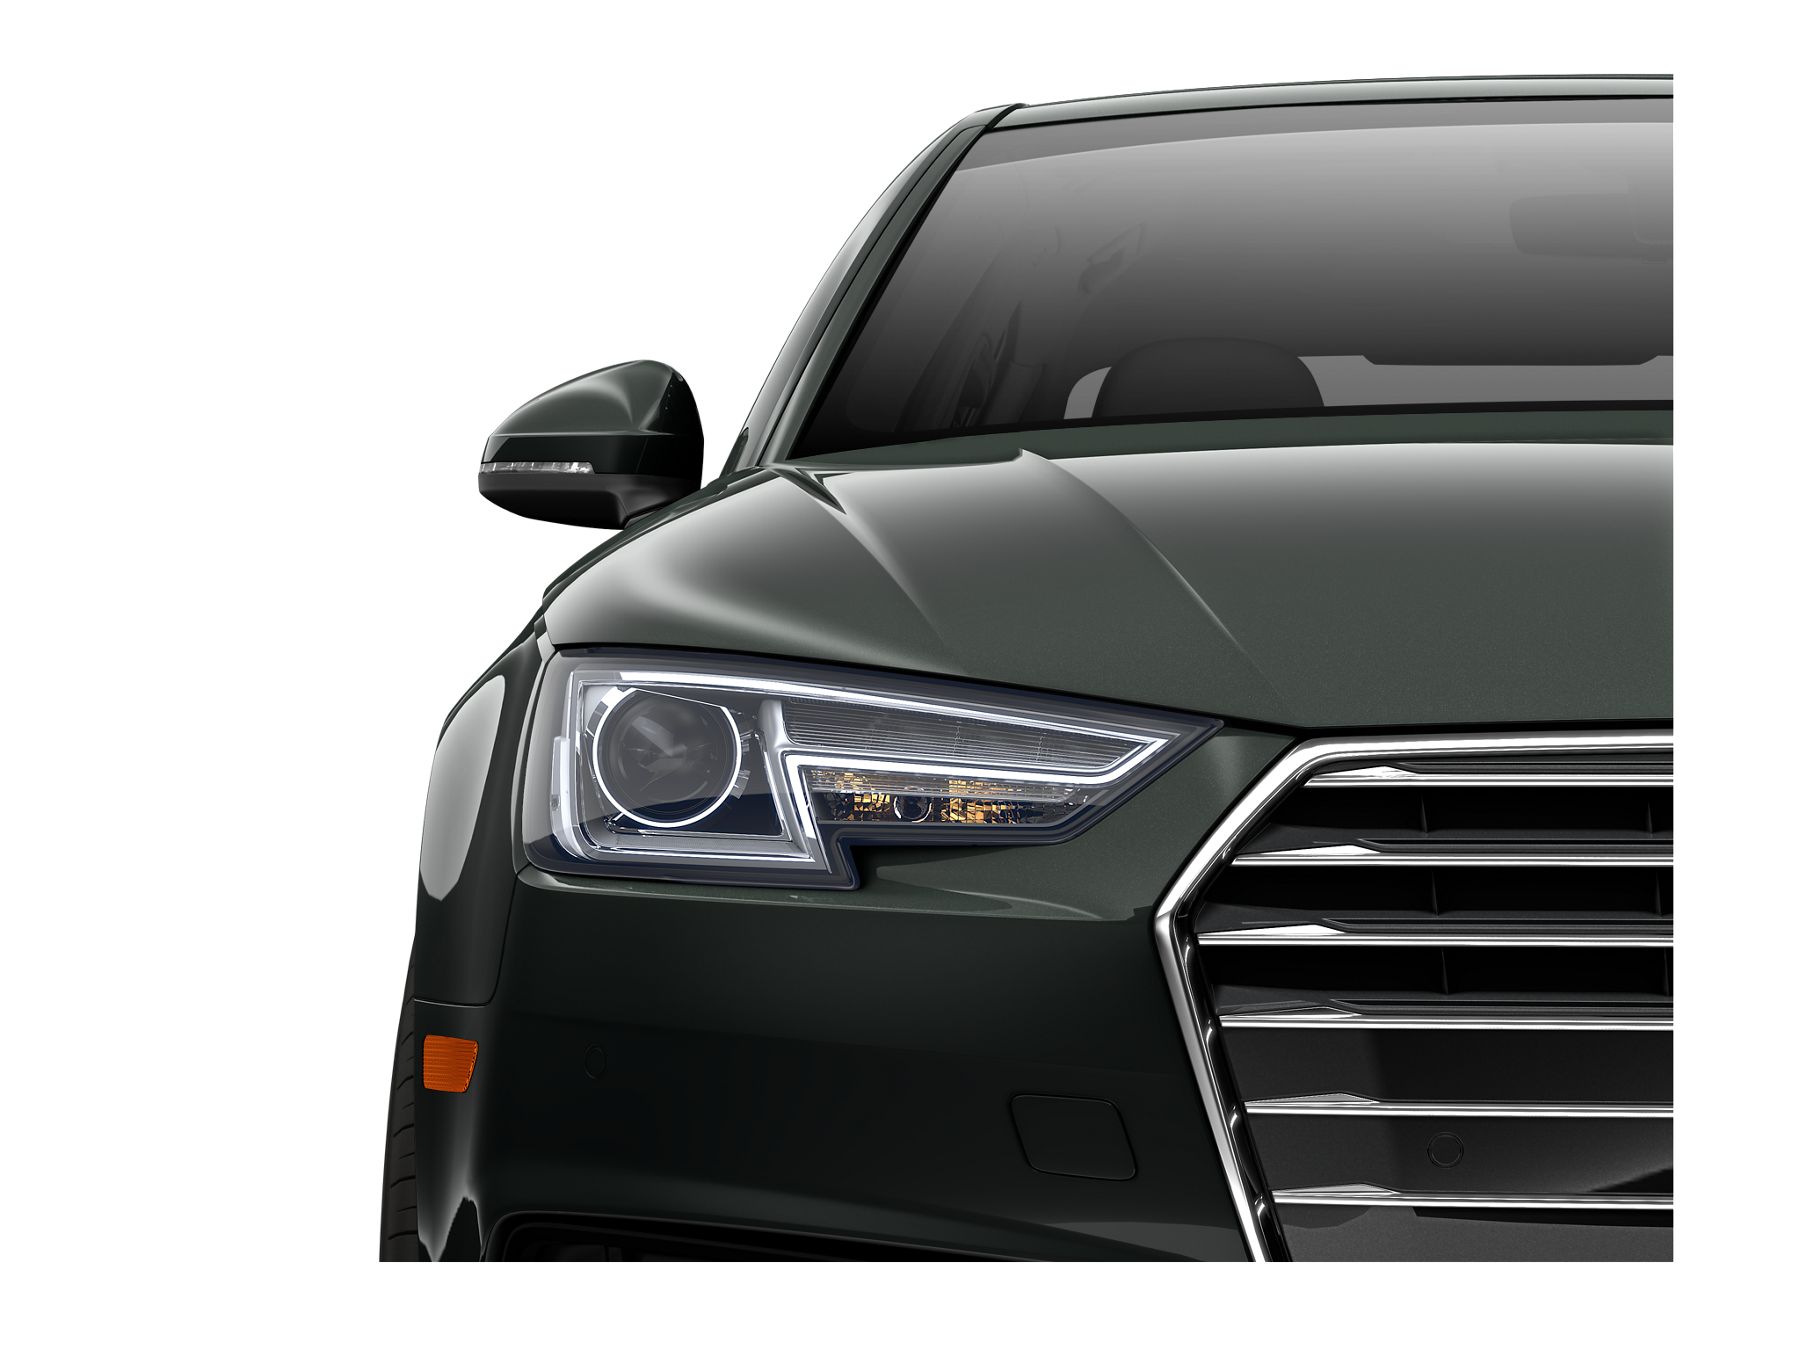 Audi A4 Premium Plus 2017 front view